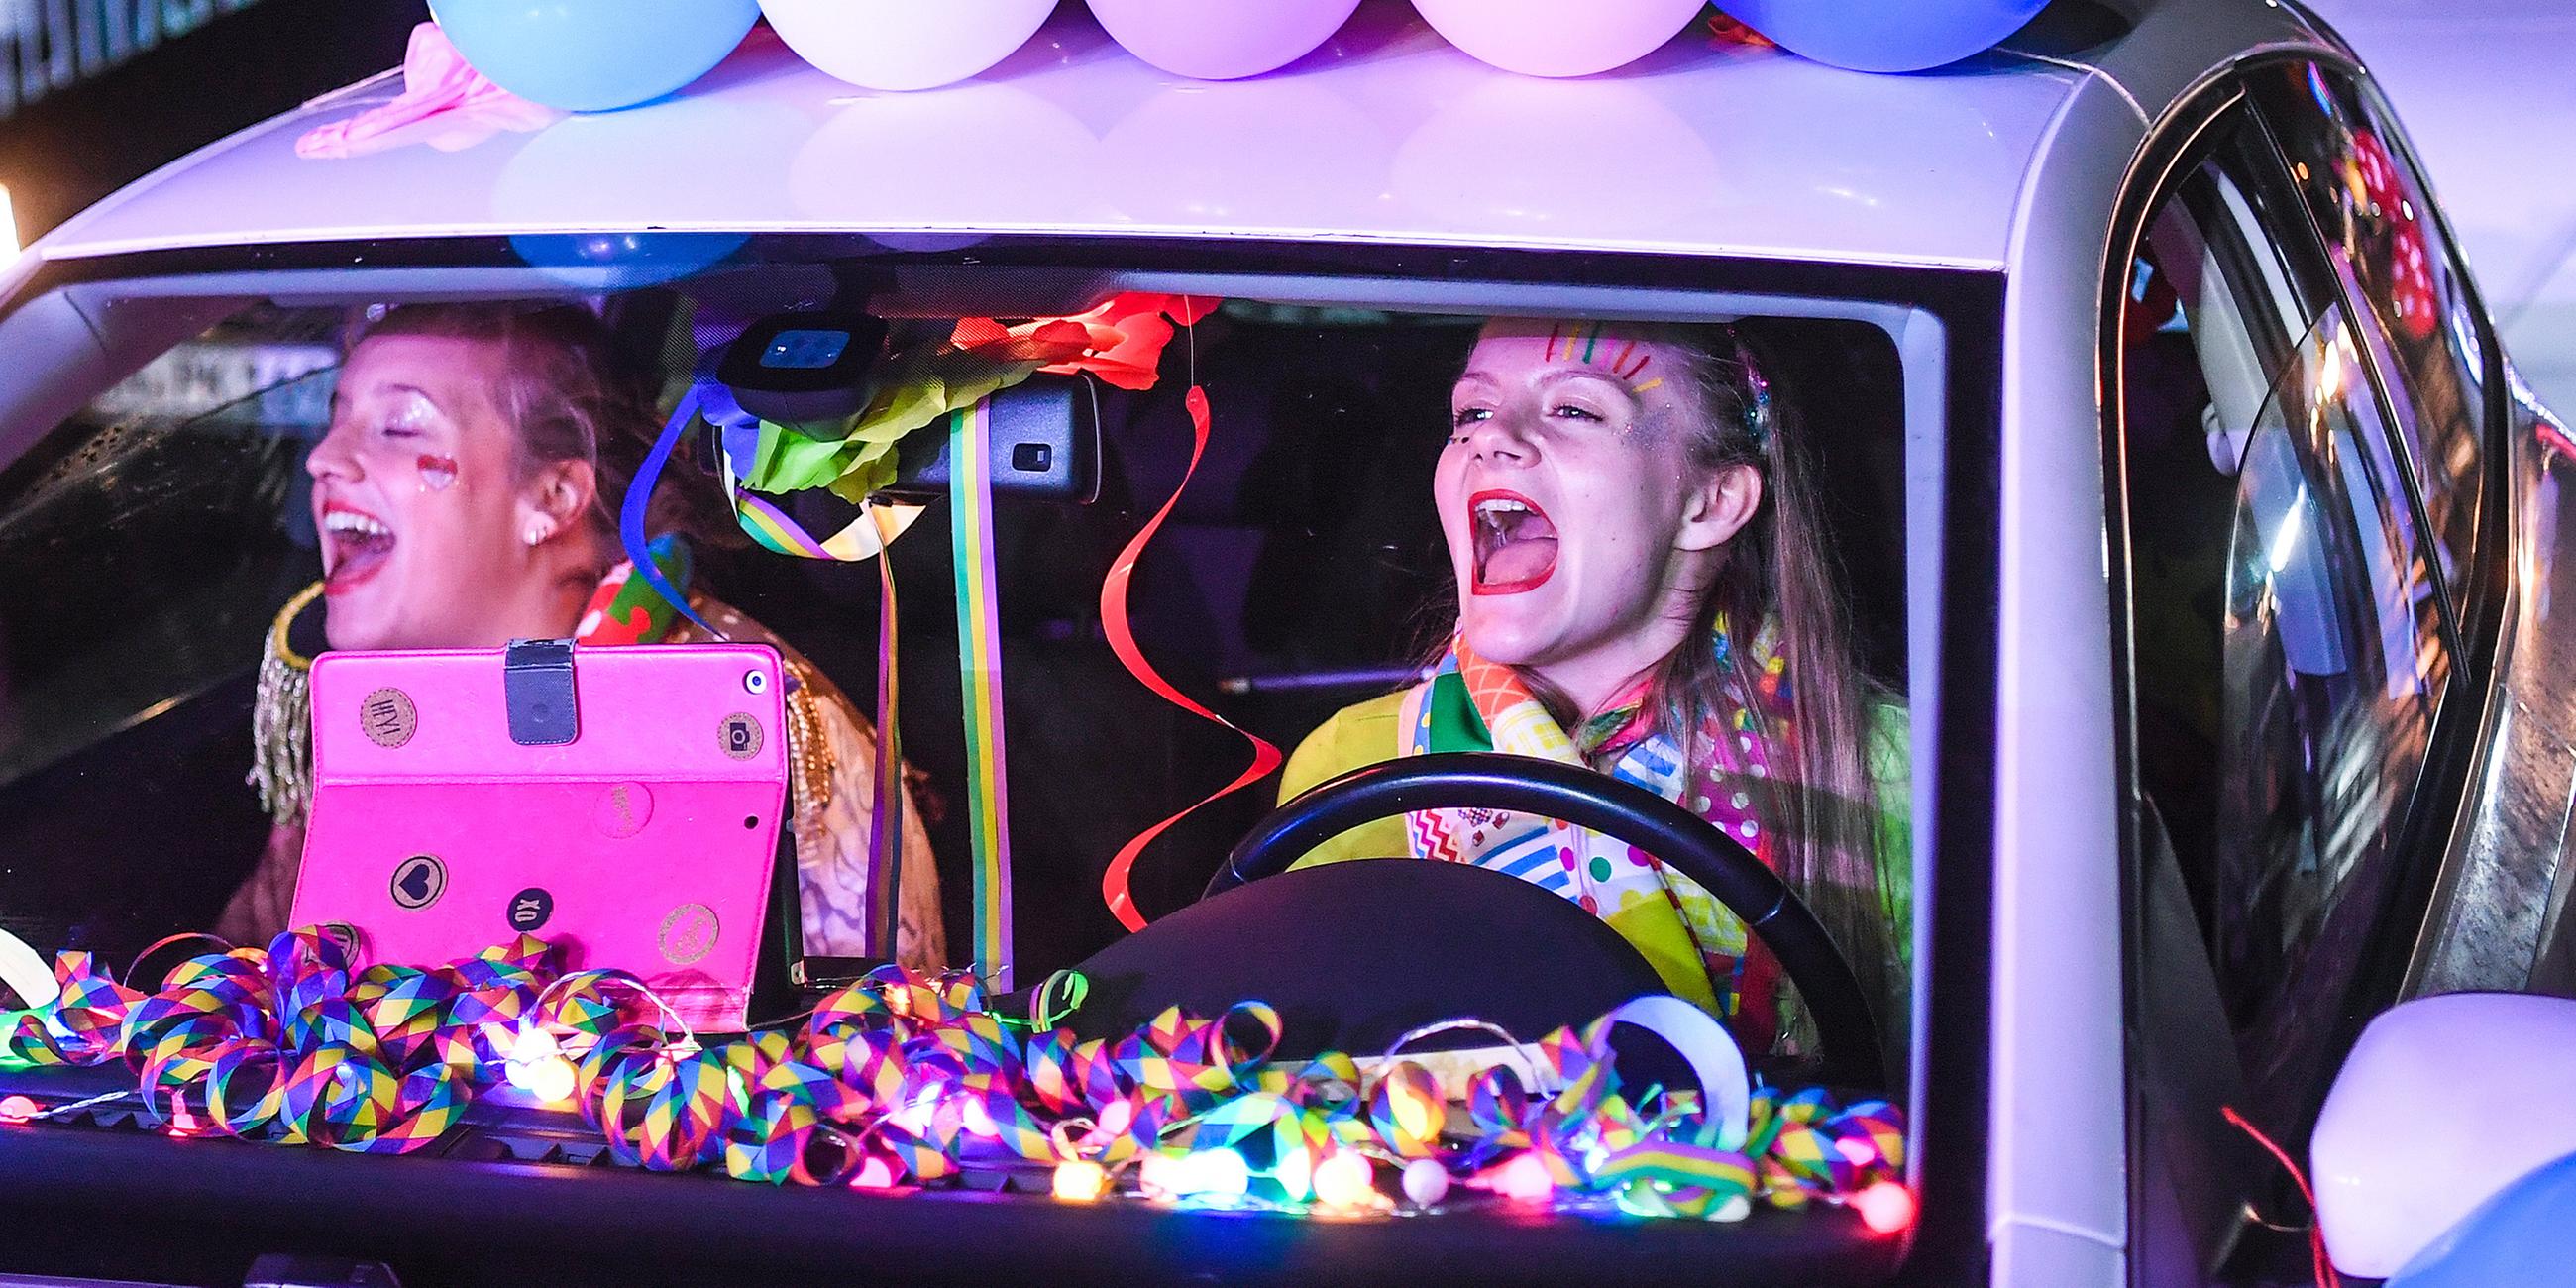 Teilnehmerinnen in ihrem Auto bei einem Karnevalskonzert in einem Bonner Autokino.